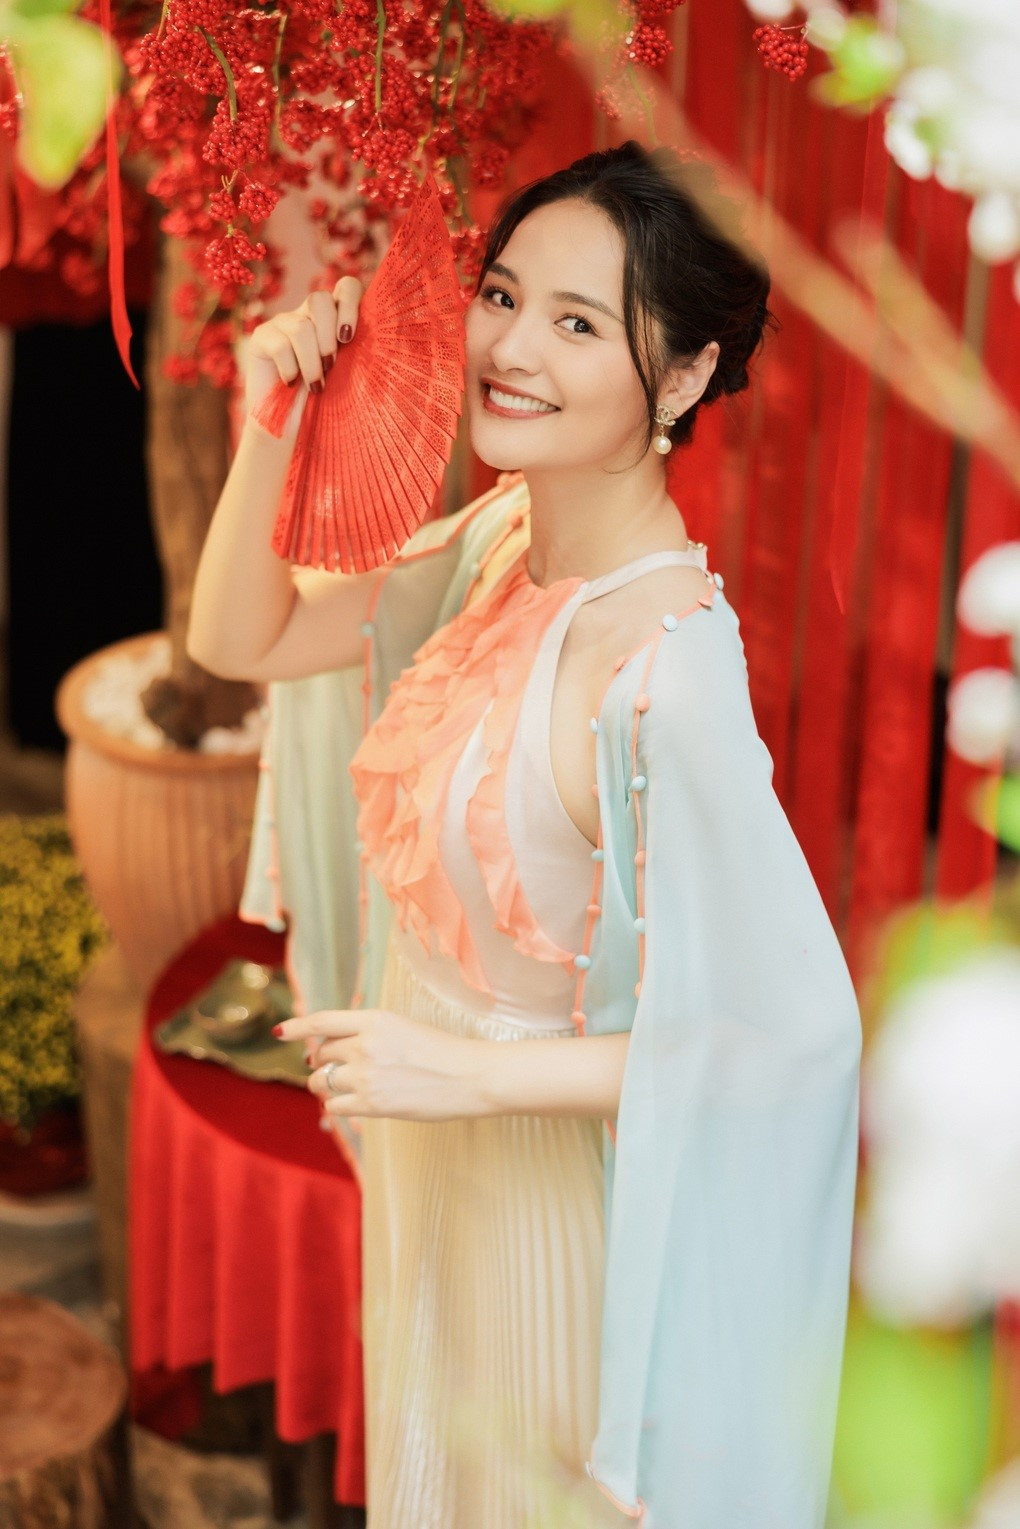 Một hoa hậu Việt từng được bình chọn đẹp nhất châu Á: Kết hôn khi đang đỉnh cao sự nghiệp, sắc vóc hiện tại gây chú ý! - Ảnh 3